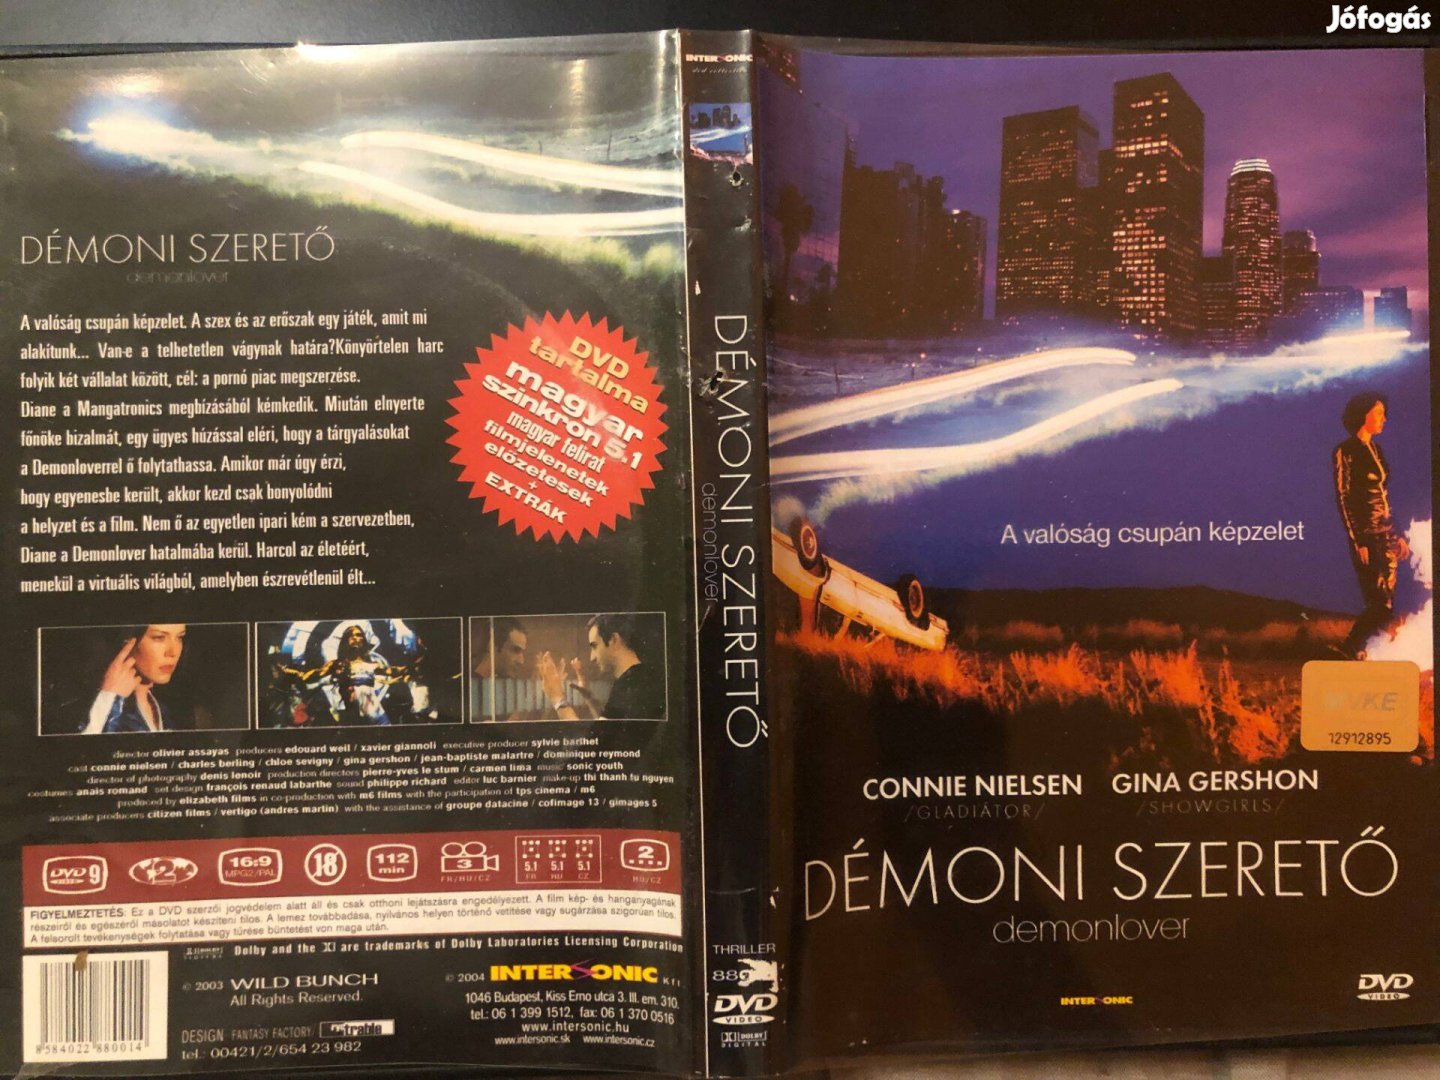 Démoni szerető (karcmentes, ritkaság, Connie Nielsen) DVD